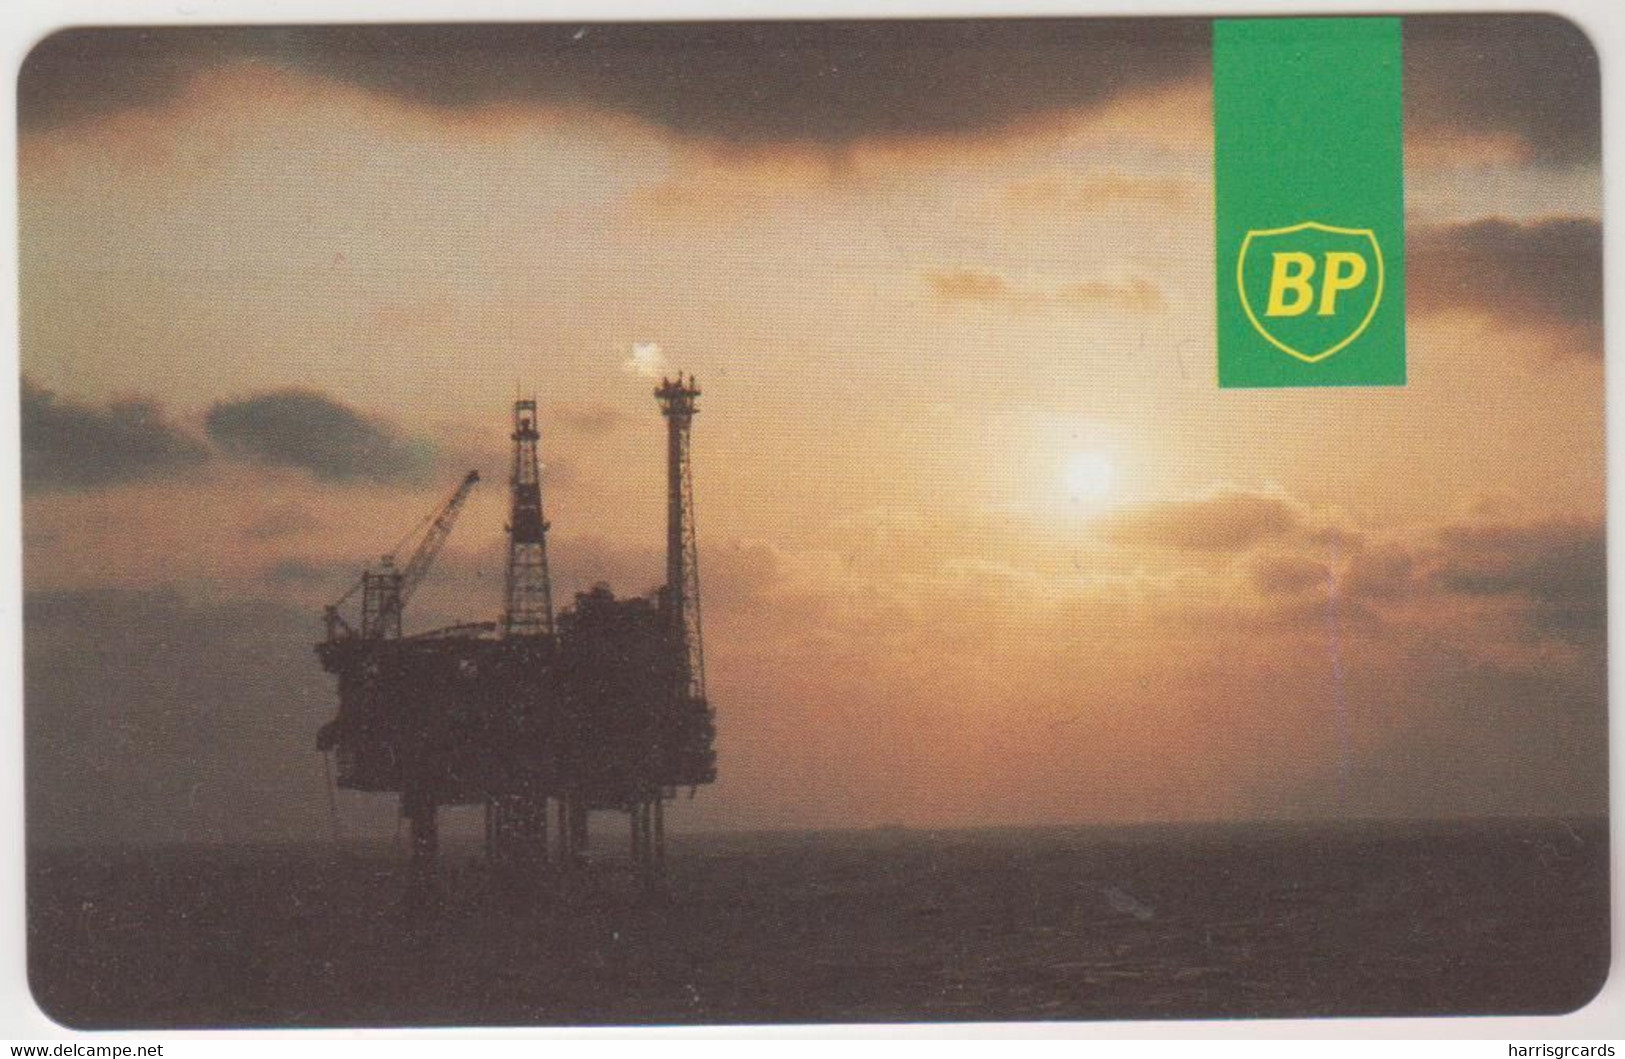 UK (Autelca) - BP, 50 Units, IPL Logo In Red, Red Face Value, Used - [ 2] Plataformas Petroleras